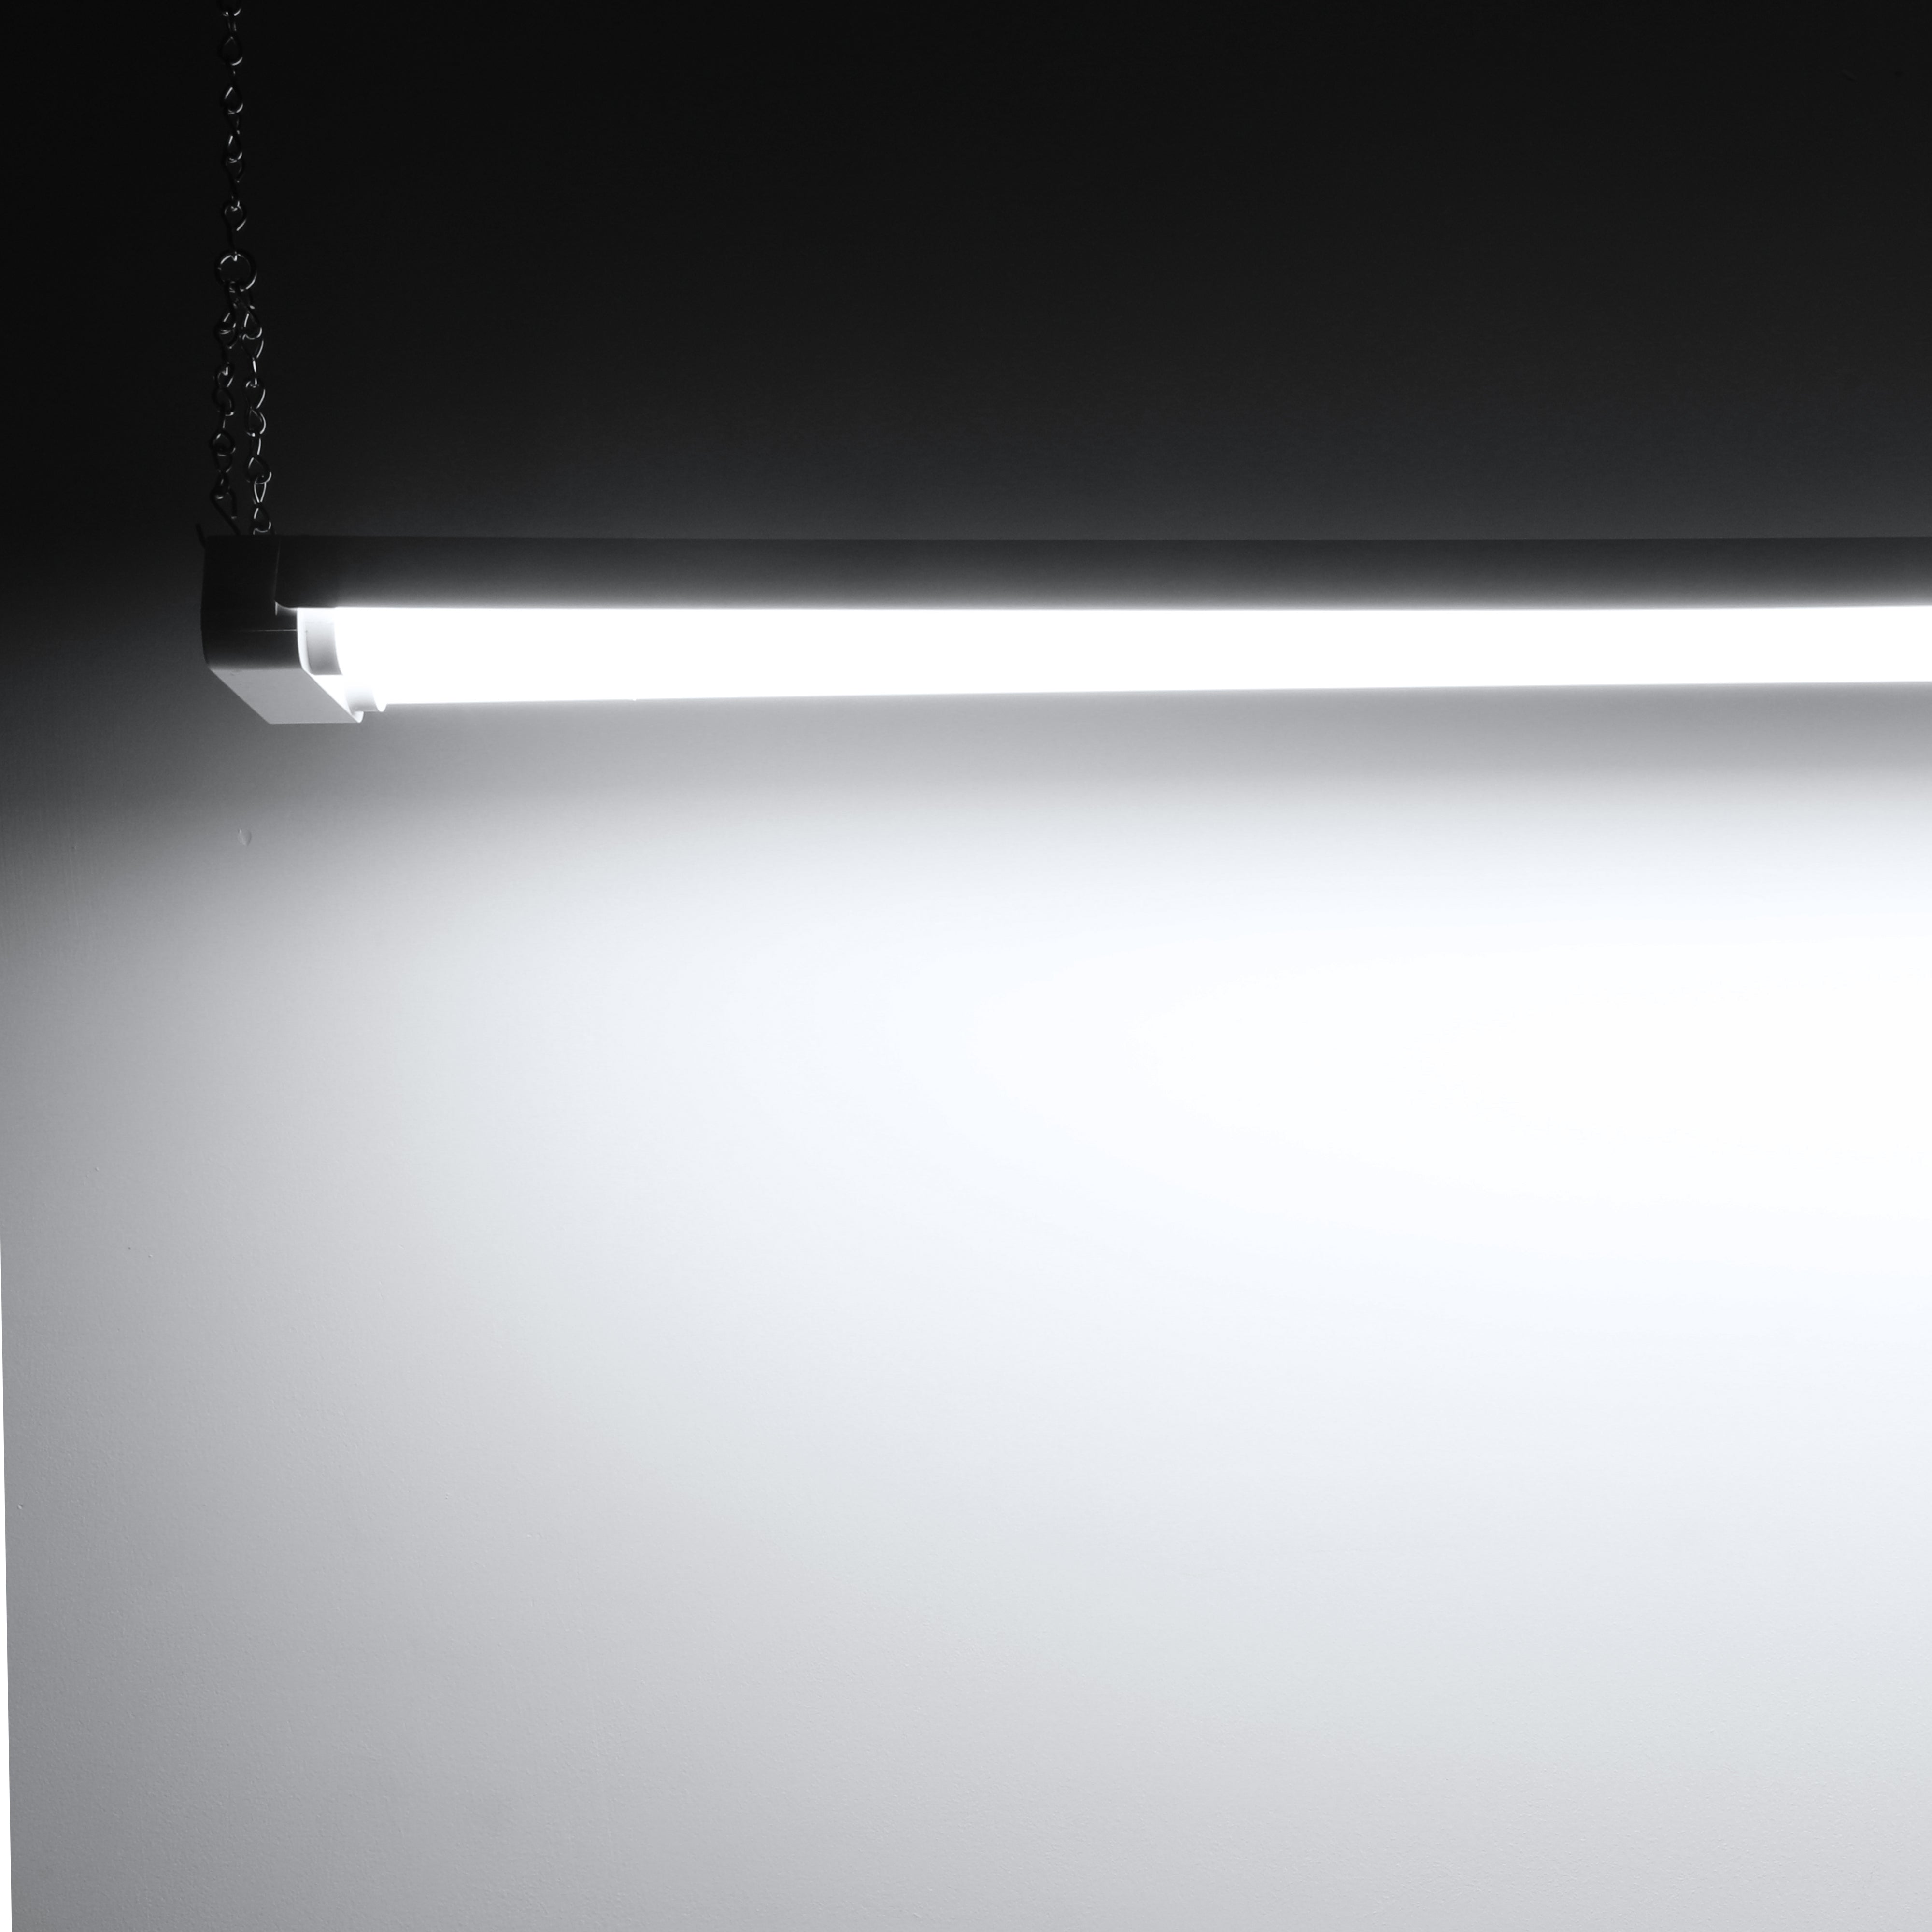 PendaLux 4' LED Linear Shop Light Fixture - 40W - 5000K